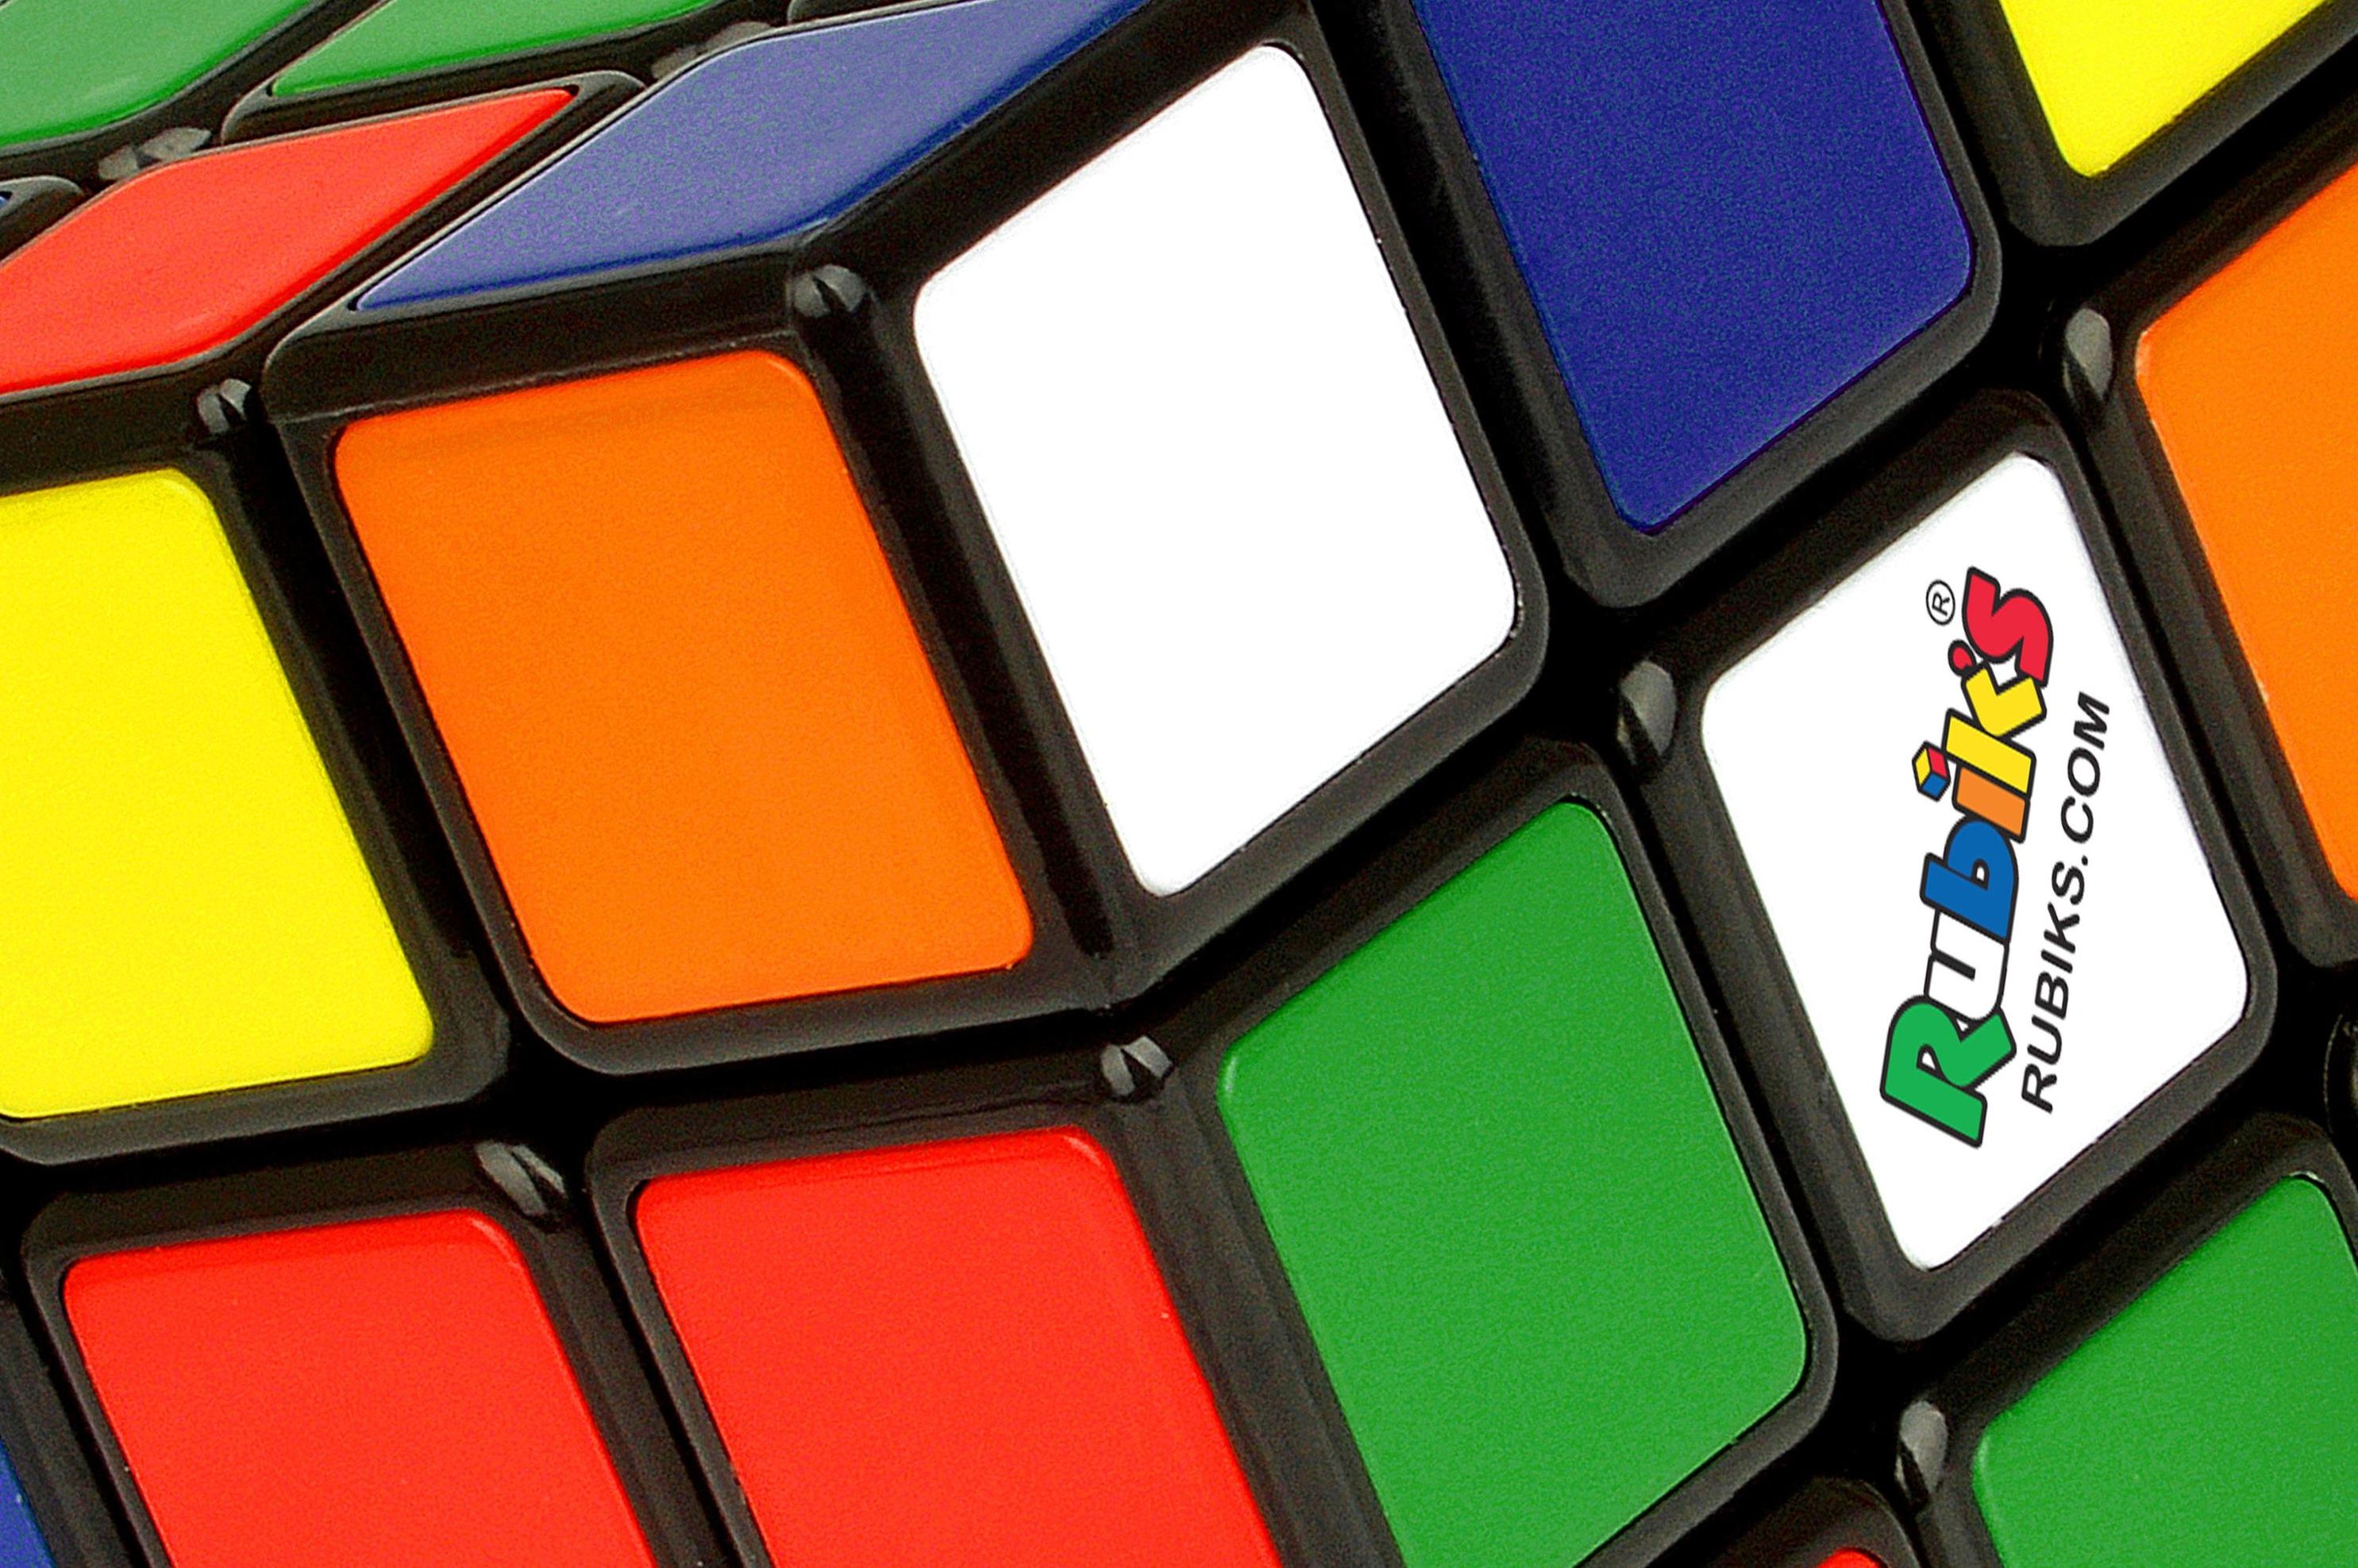 Thinkfun Rubik's Cube, der original Zauberwürfel 3x3 von Rubik's -  Verbesserte, leichtgängigere Version, ideales Knobels | Weltbild.ch